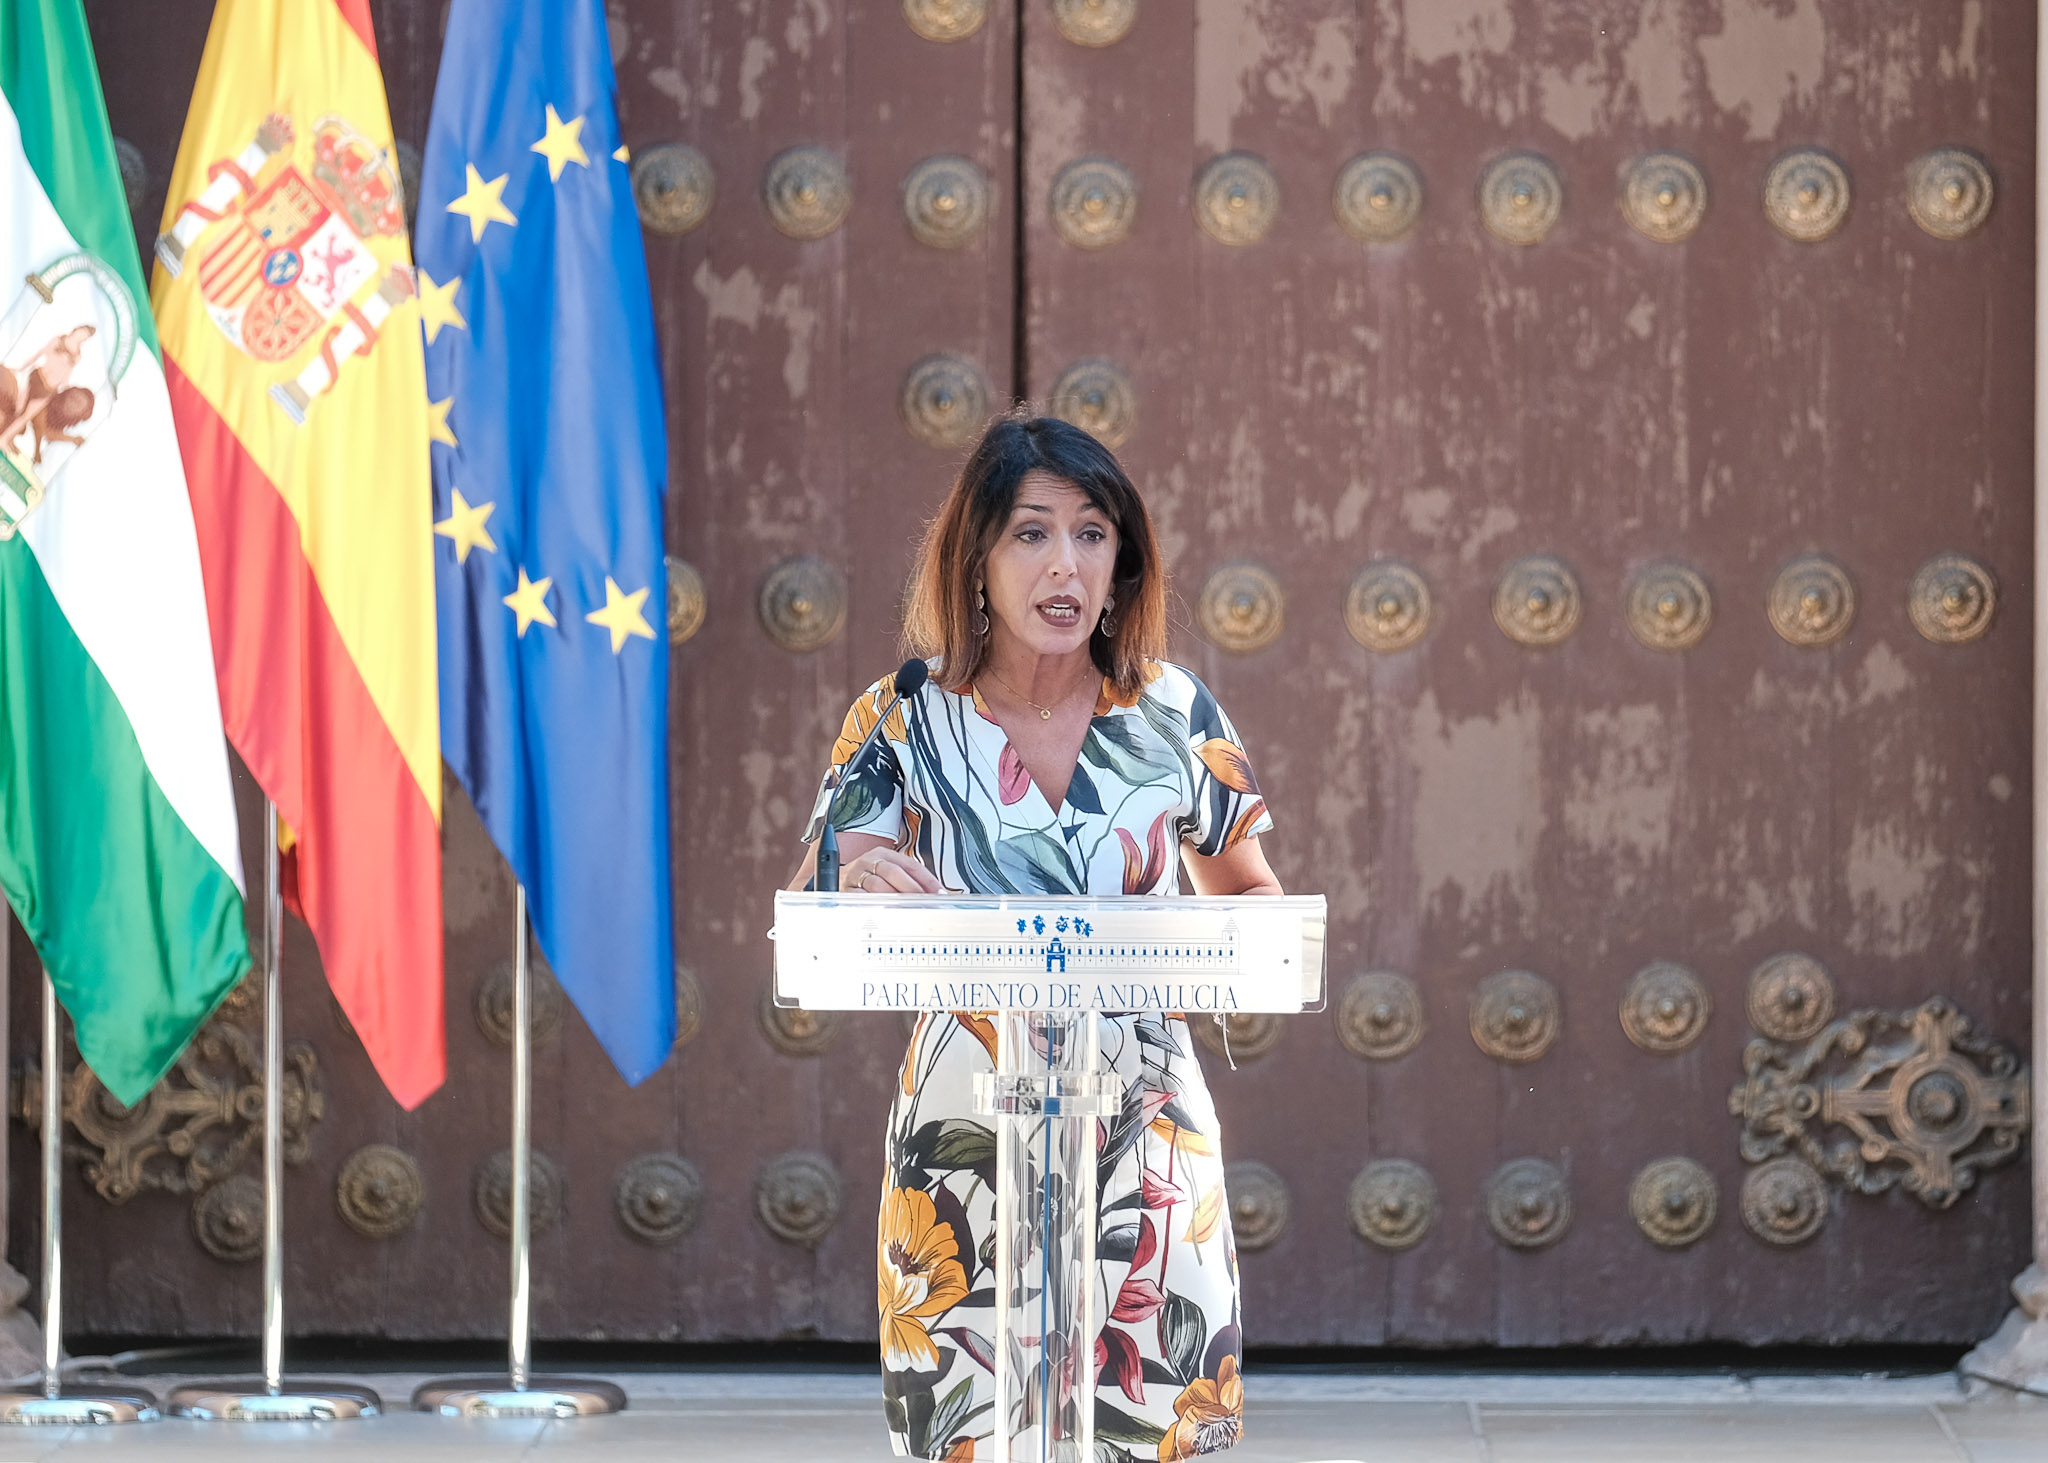  La presidenta del Parlamento de Andaluca, Marta Bosquet, pronuncia unas palabras en el acto de homenaje por el nacimiento de Blas Infante  